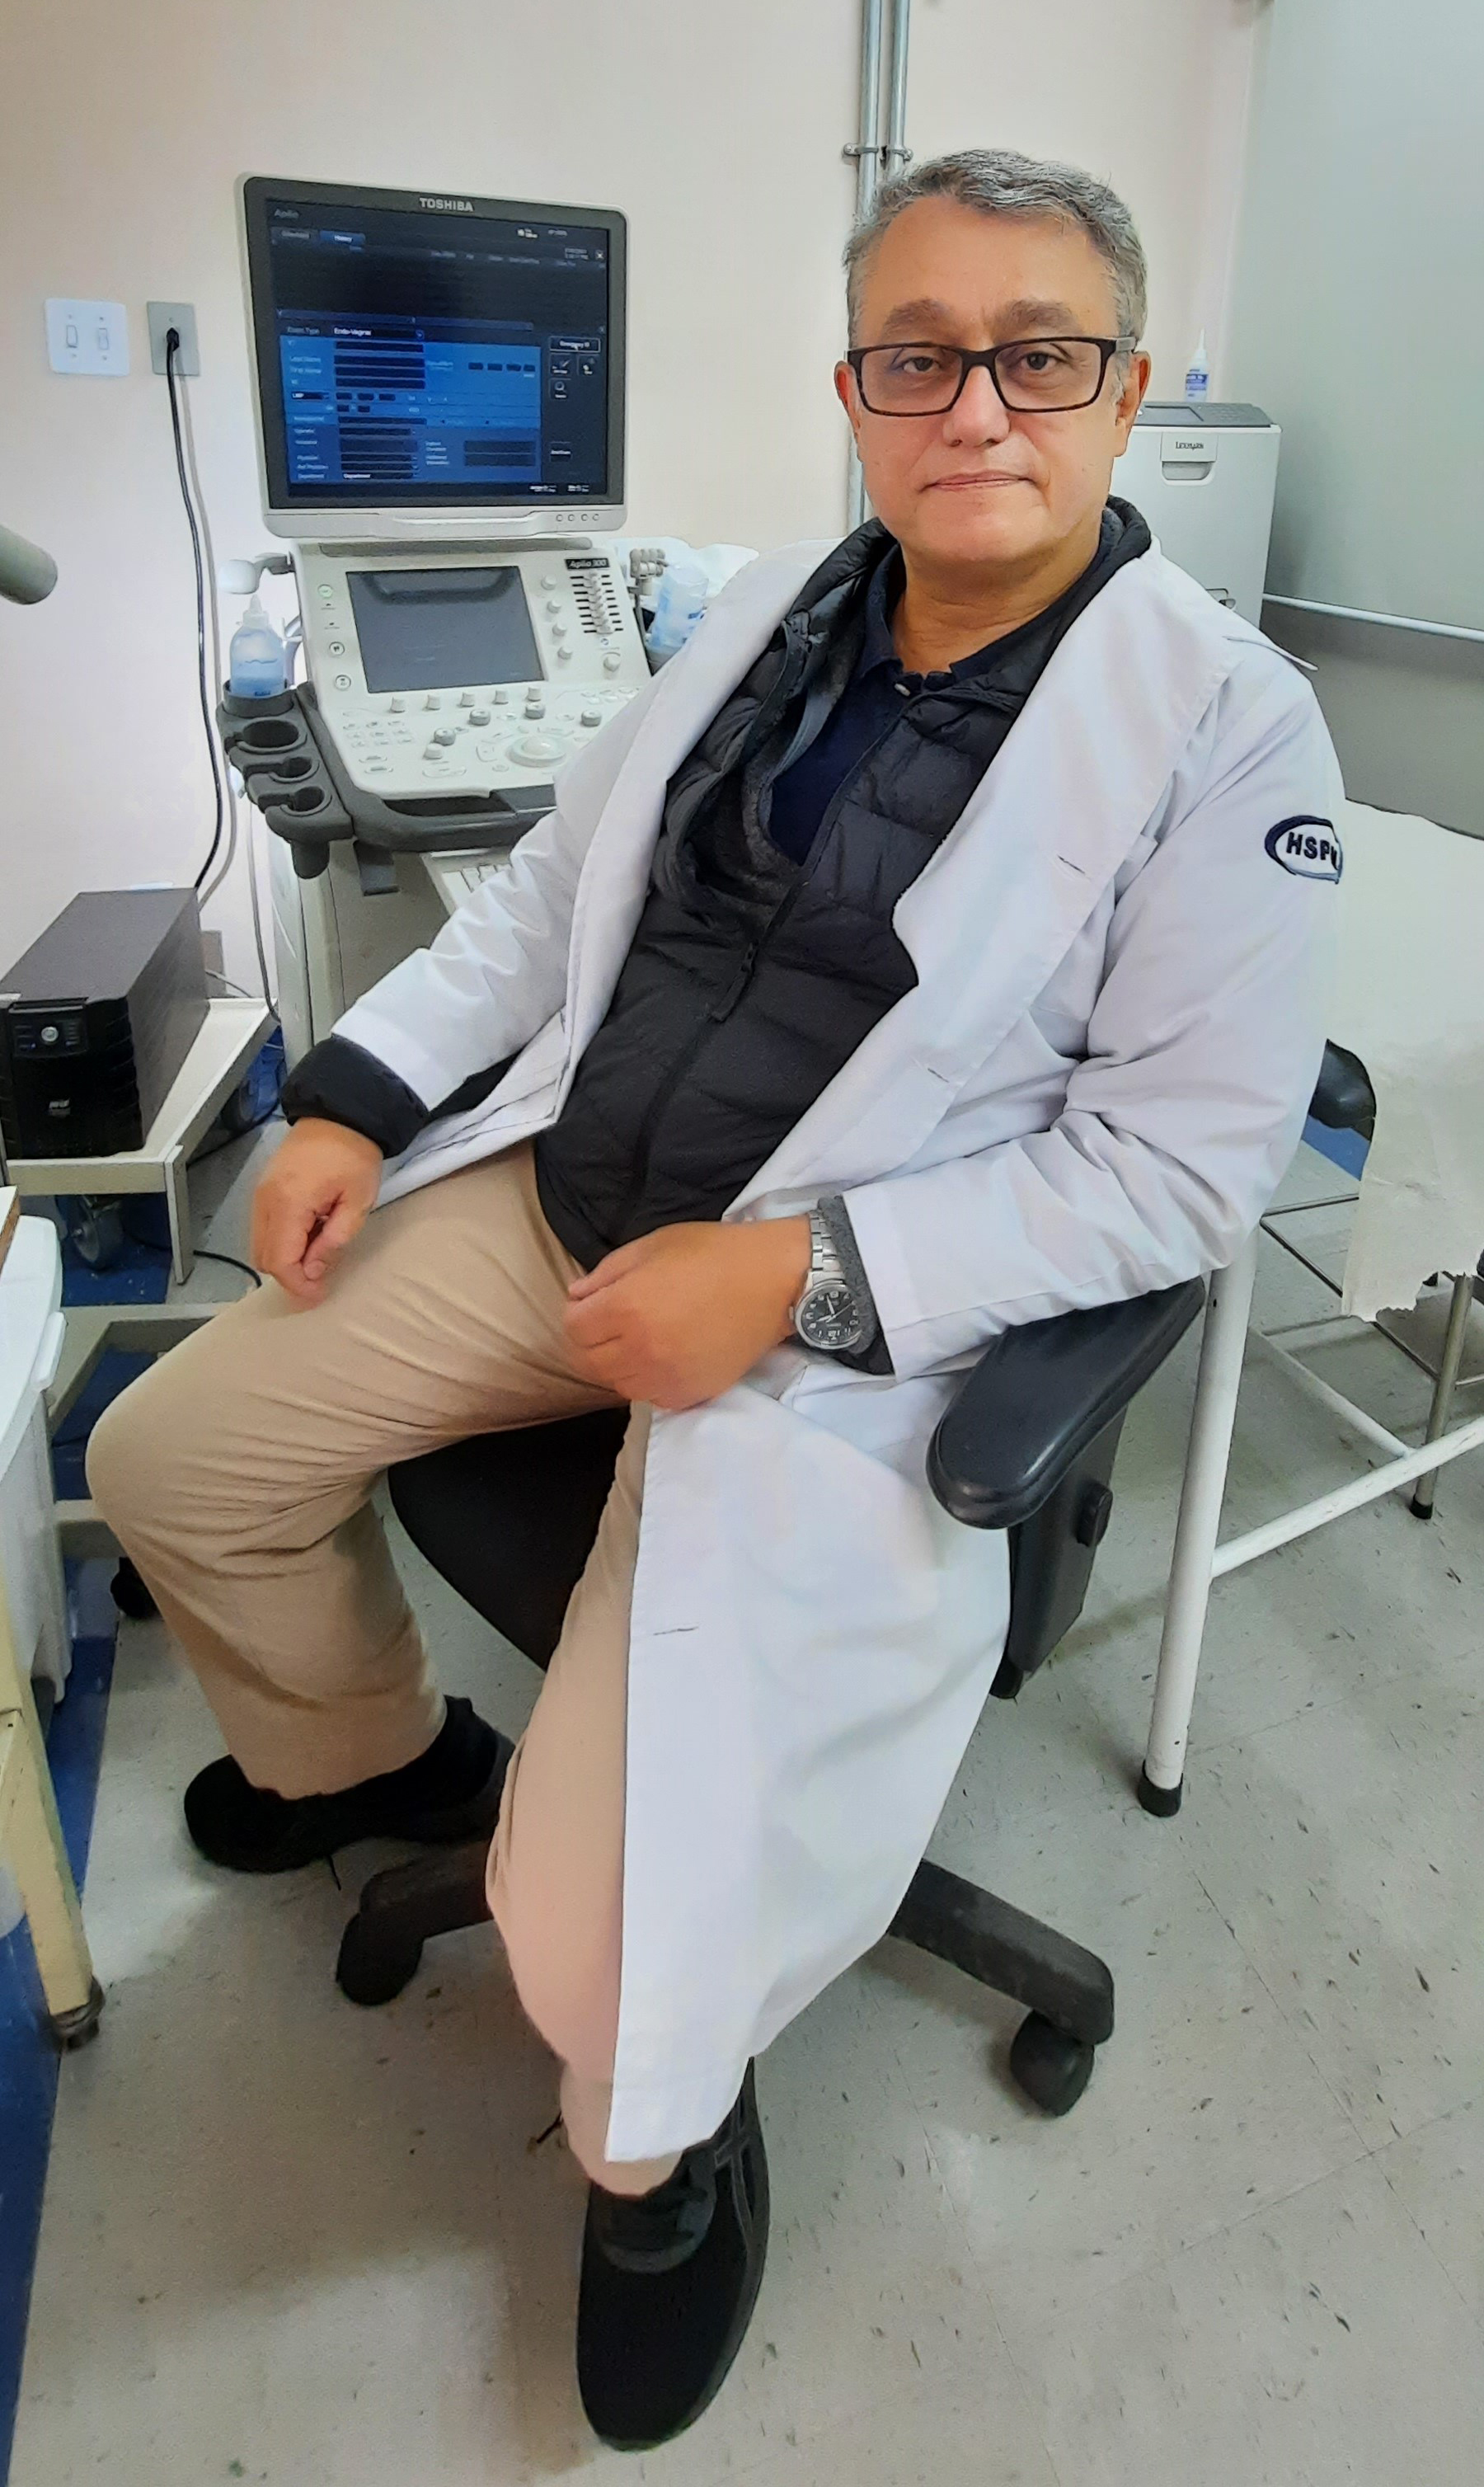 Foto do médico, de jaleco branco e óculos, sentado em frente a uma equipamento de ultrassom